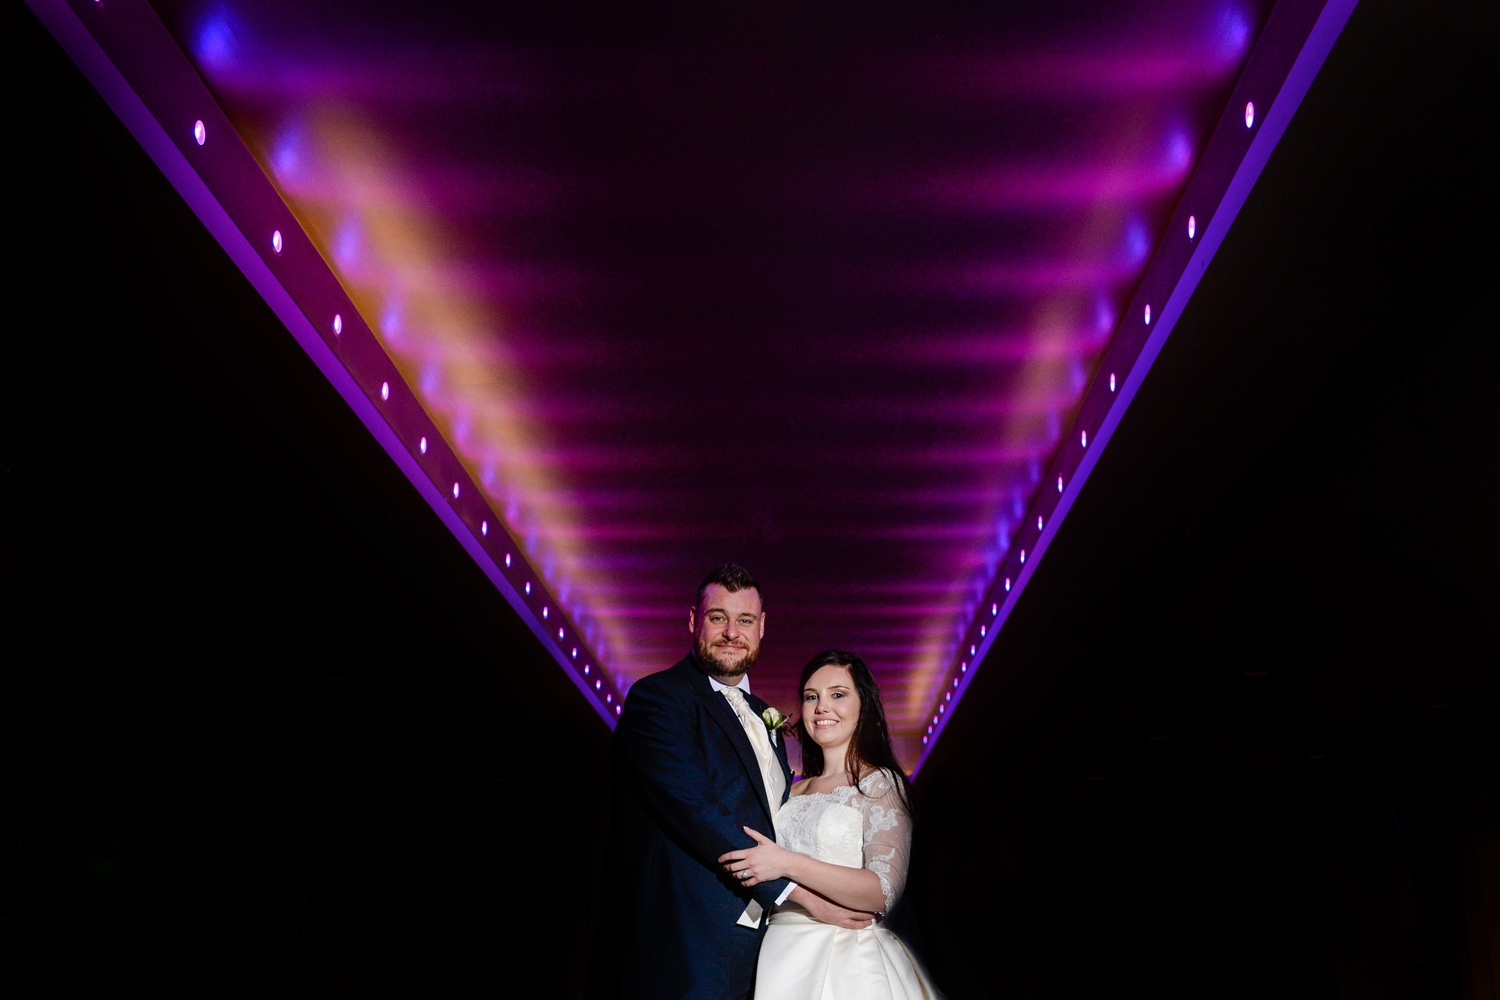 A Carton House wedding in Dublin – Stephanie and John